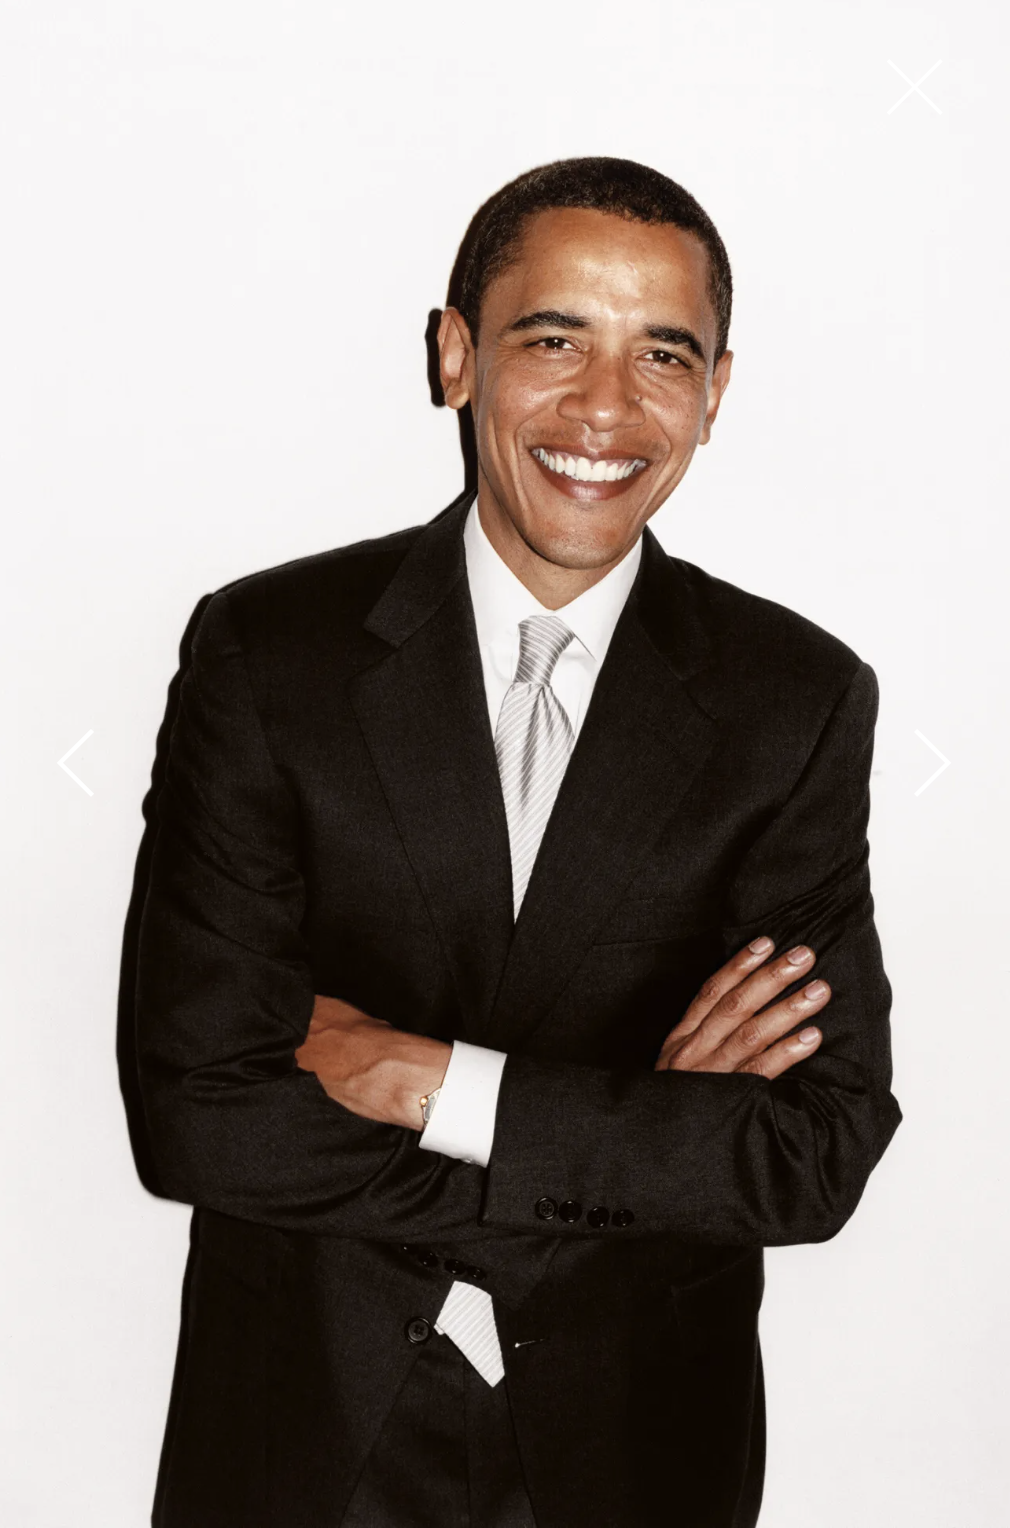 Portrait de Barack Obama qui sourit.